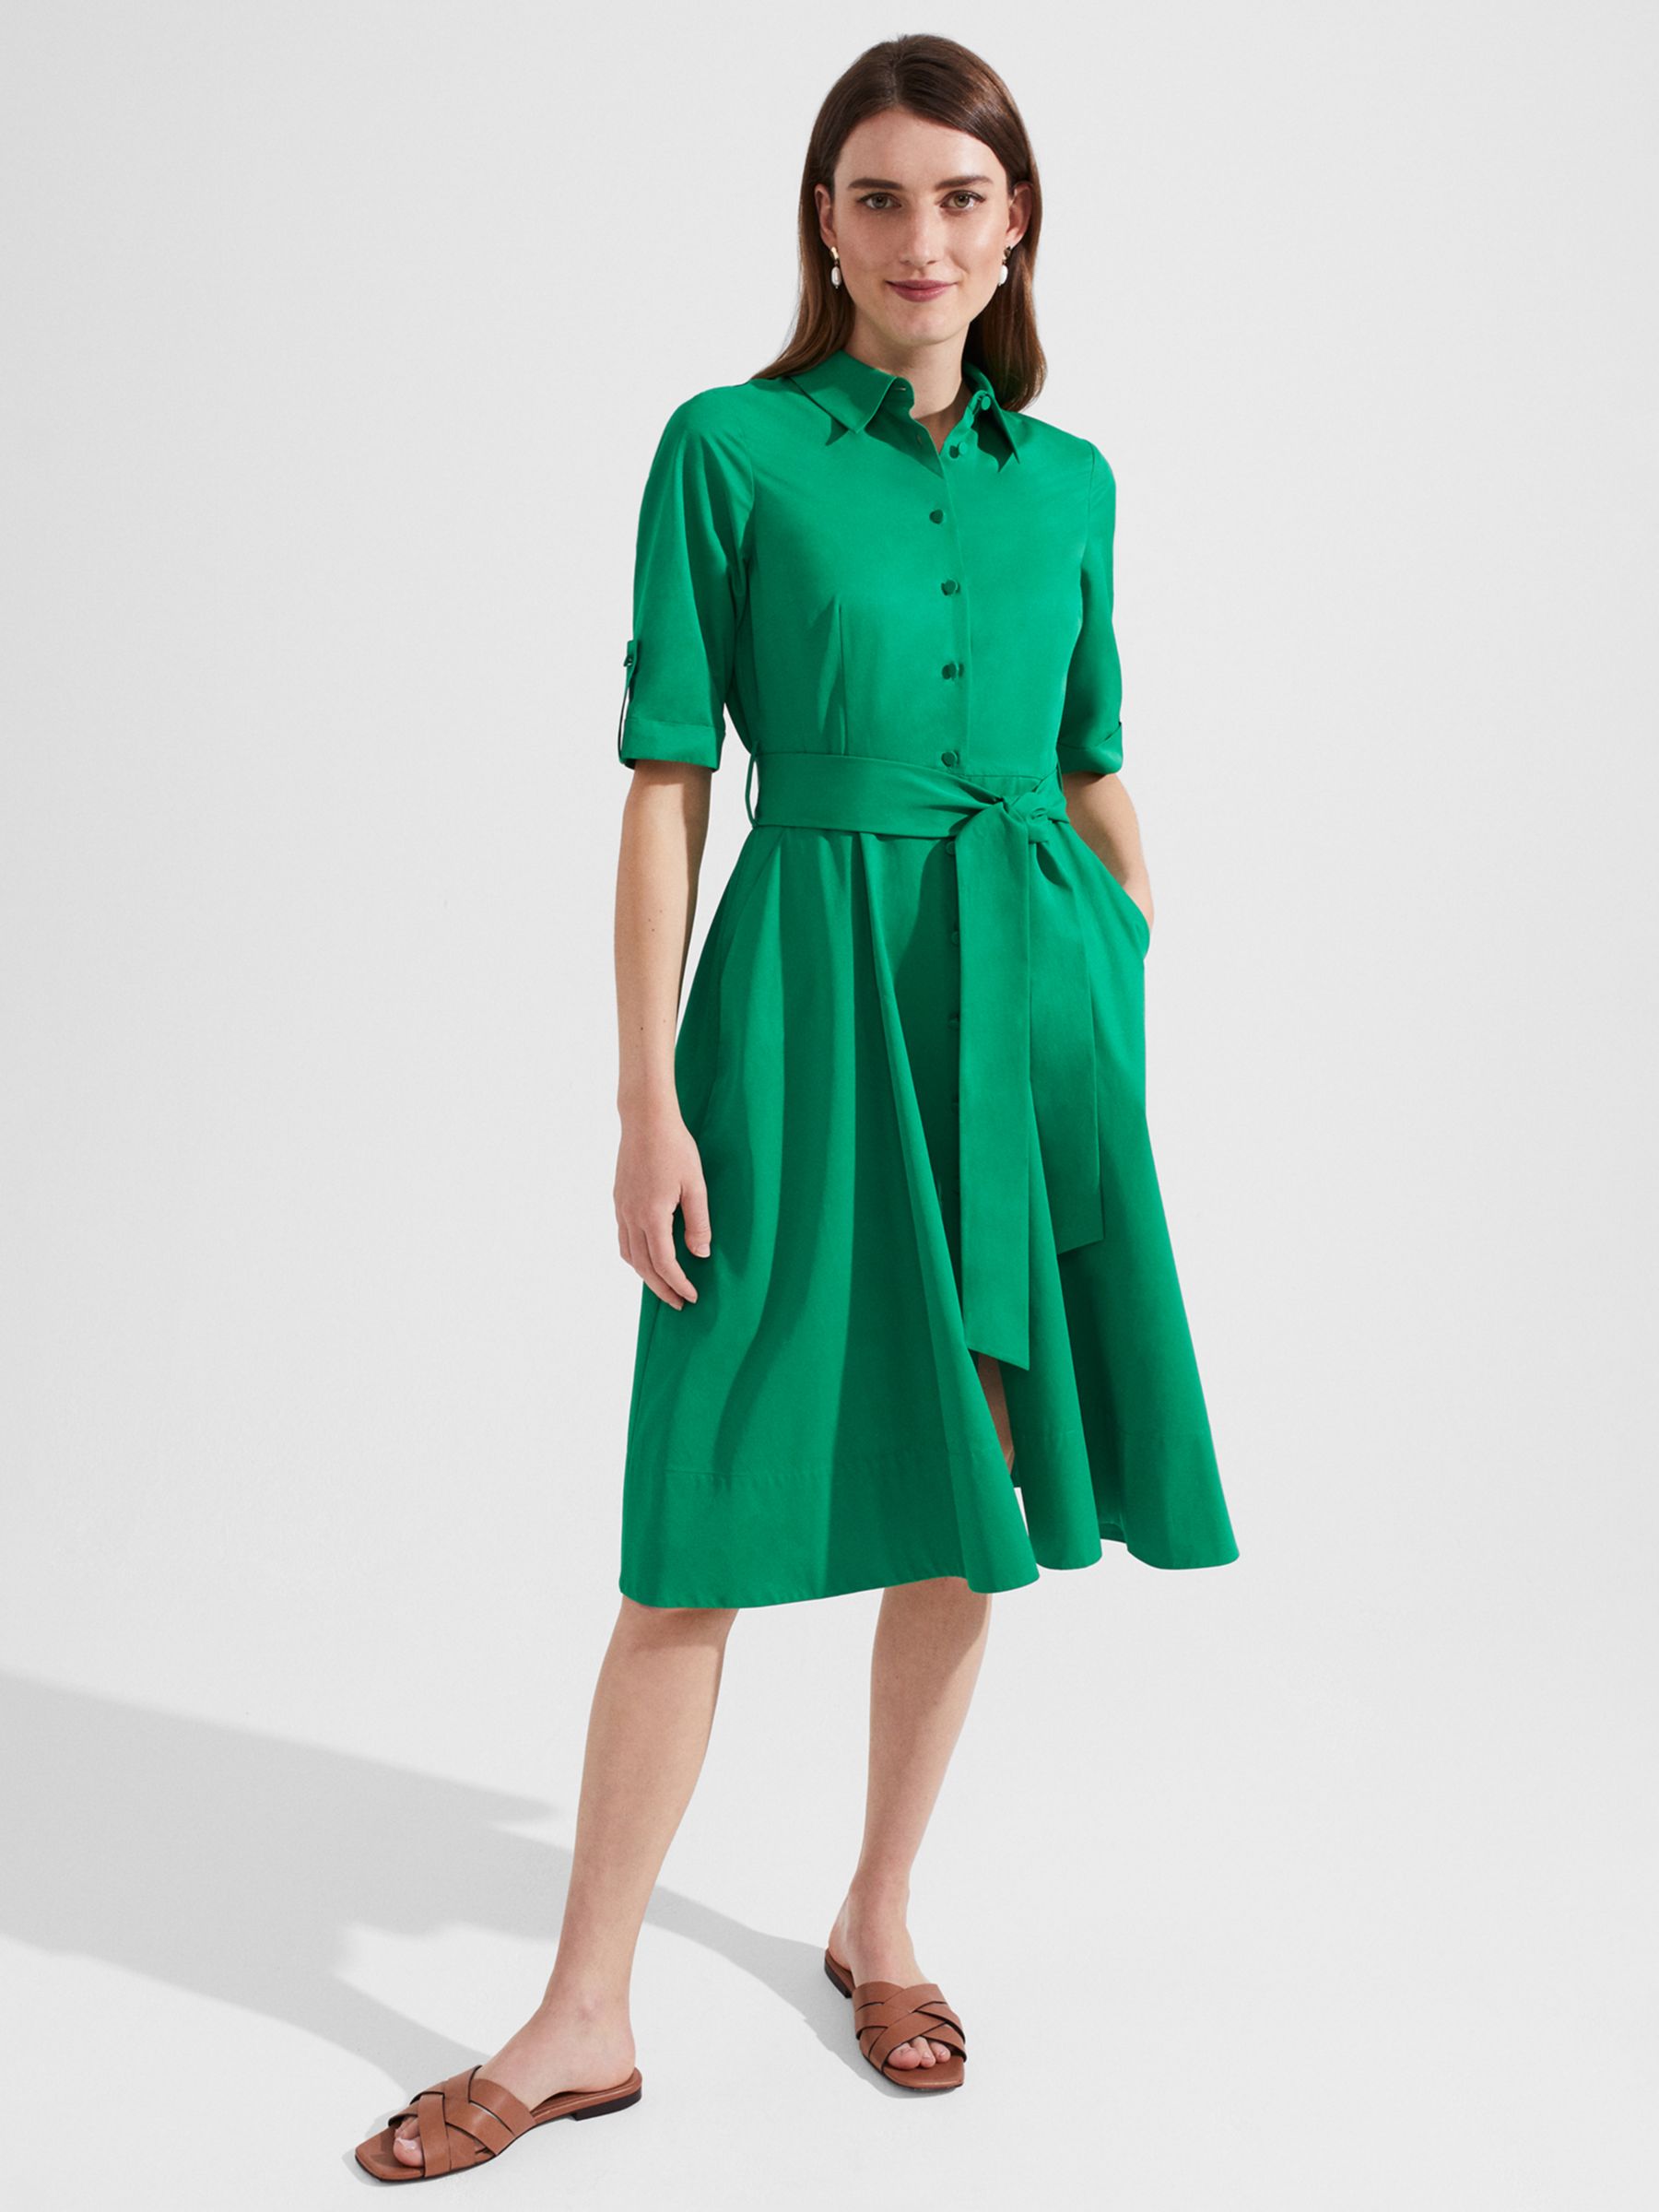 Hobbs Tyra Shirt Dress, Green at John Lewis & Partners